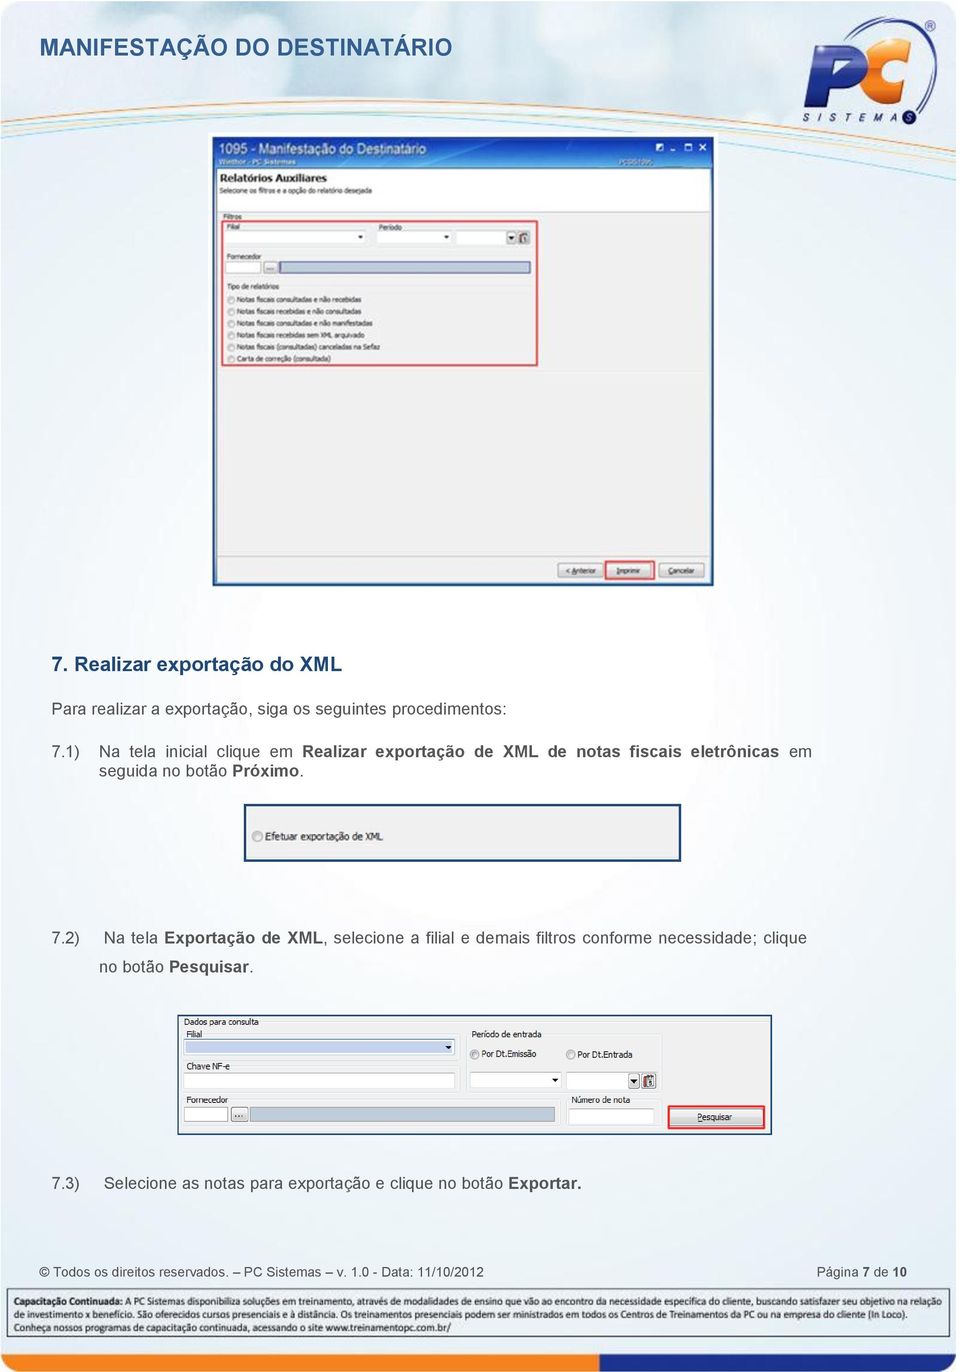 2) Na tela Exportação de XML, selecione a filial e demais filtros conforme necessidade; clique no botão Pesquisar. 7.